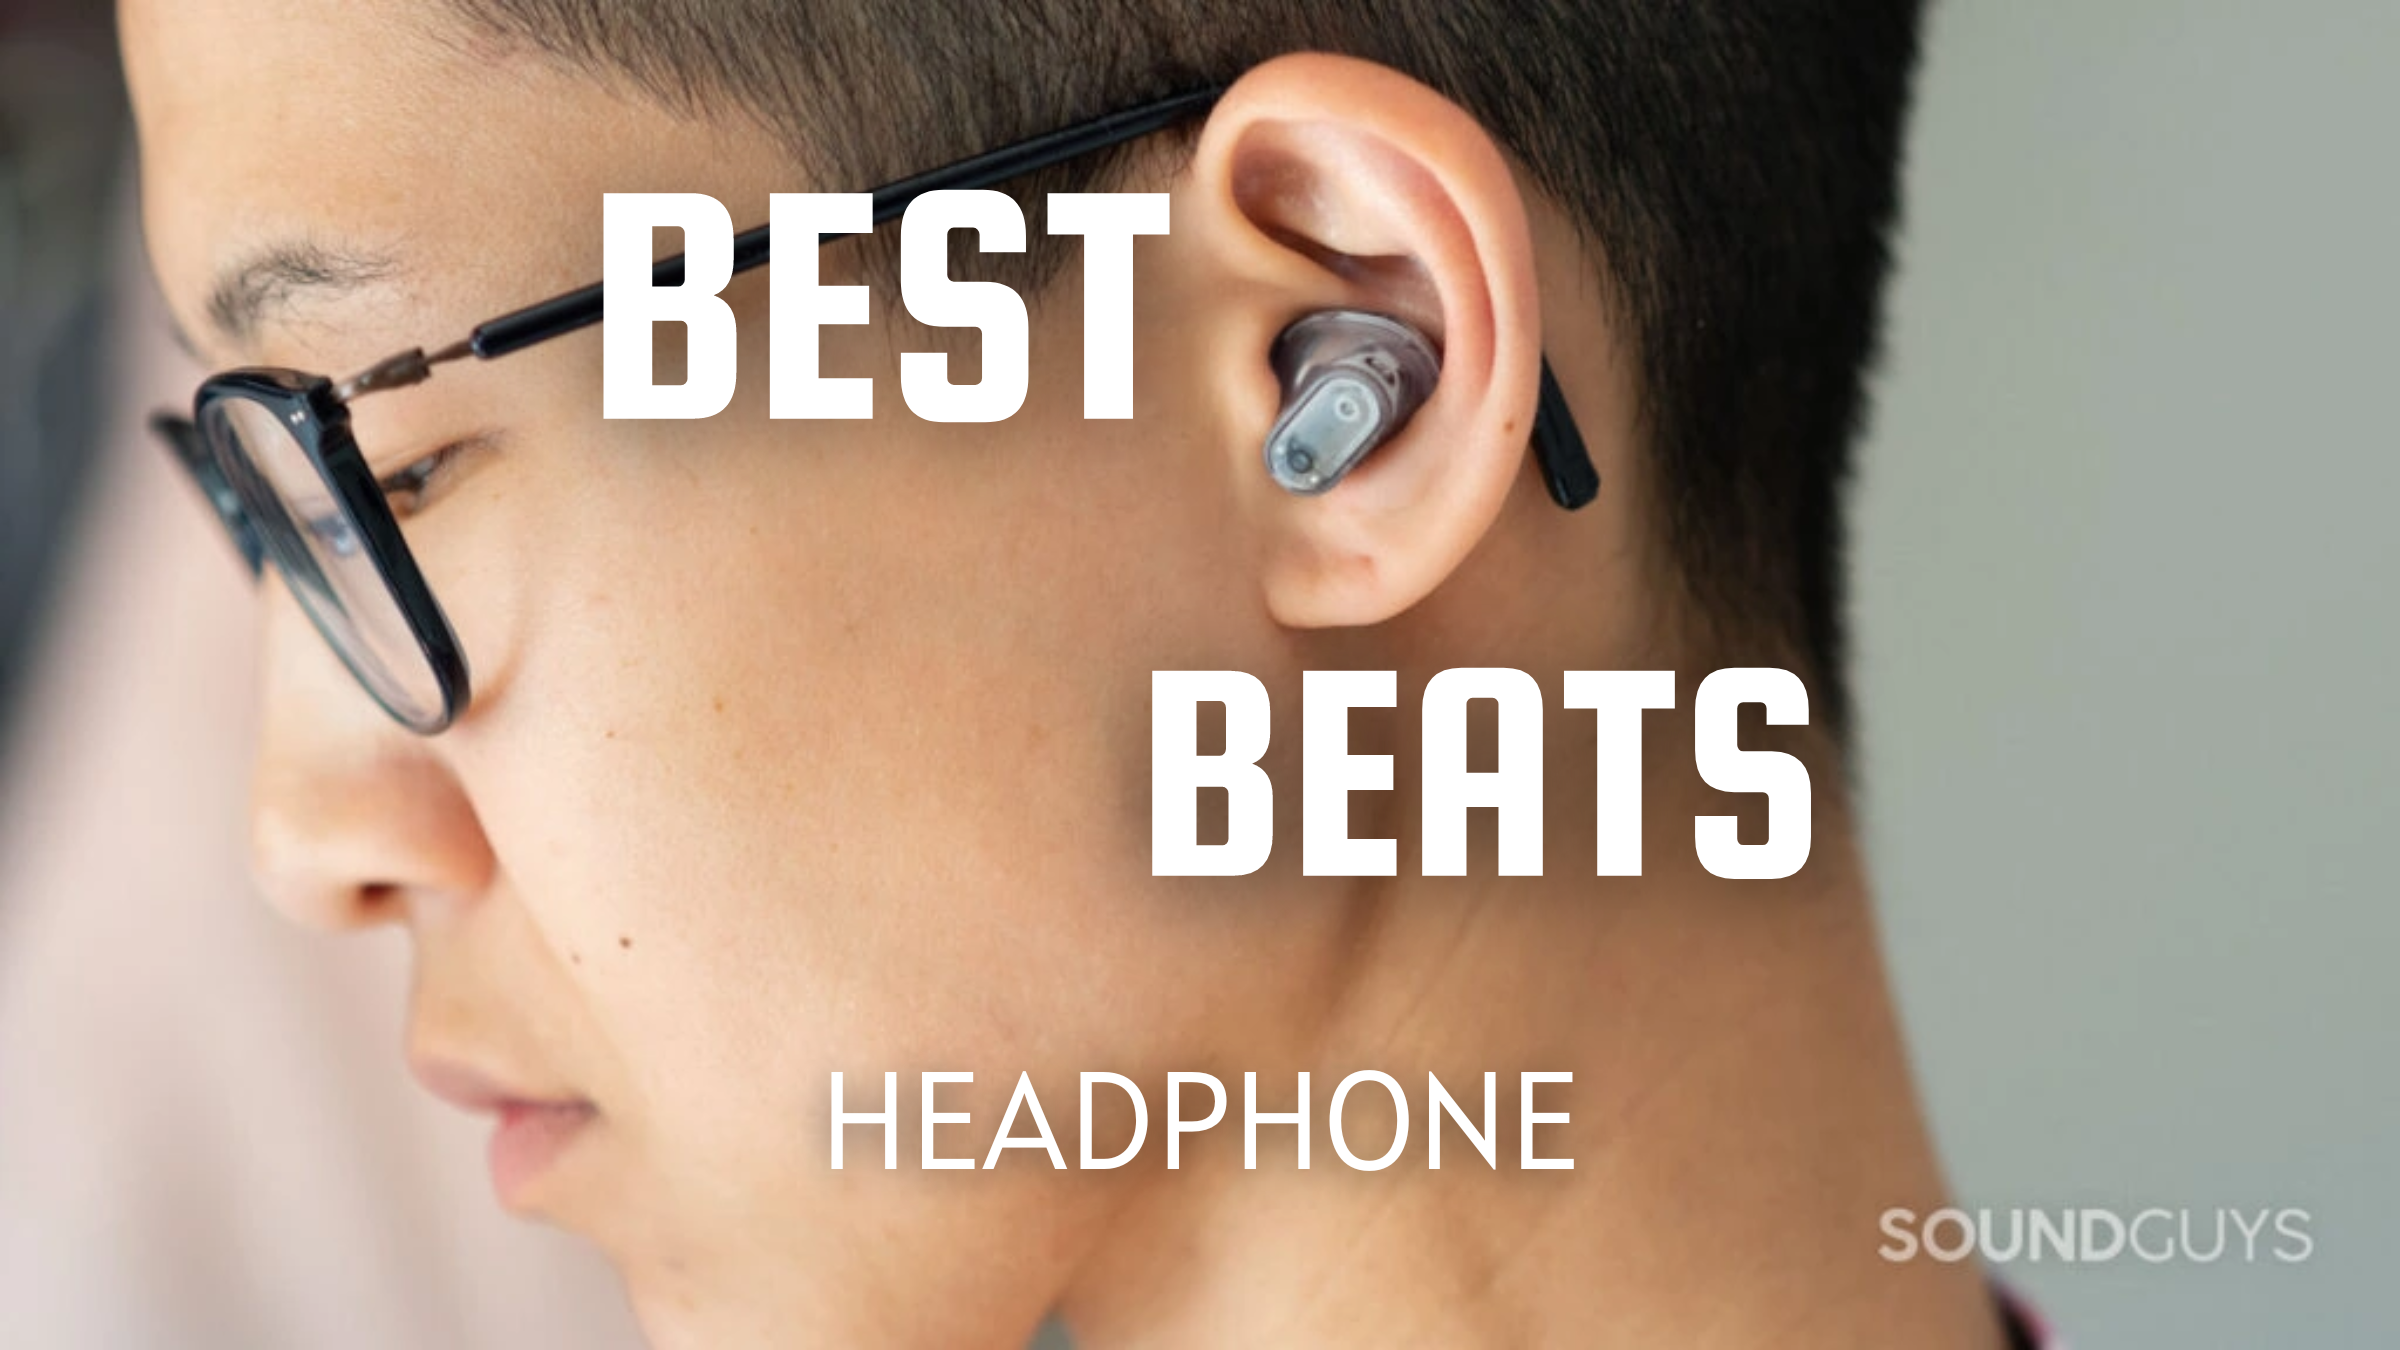 Best Beats headphones